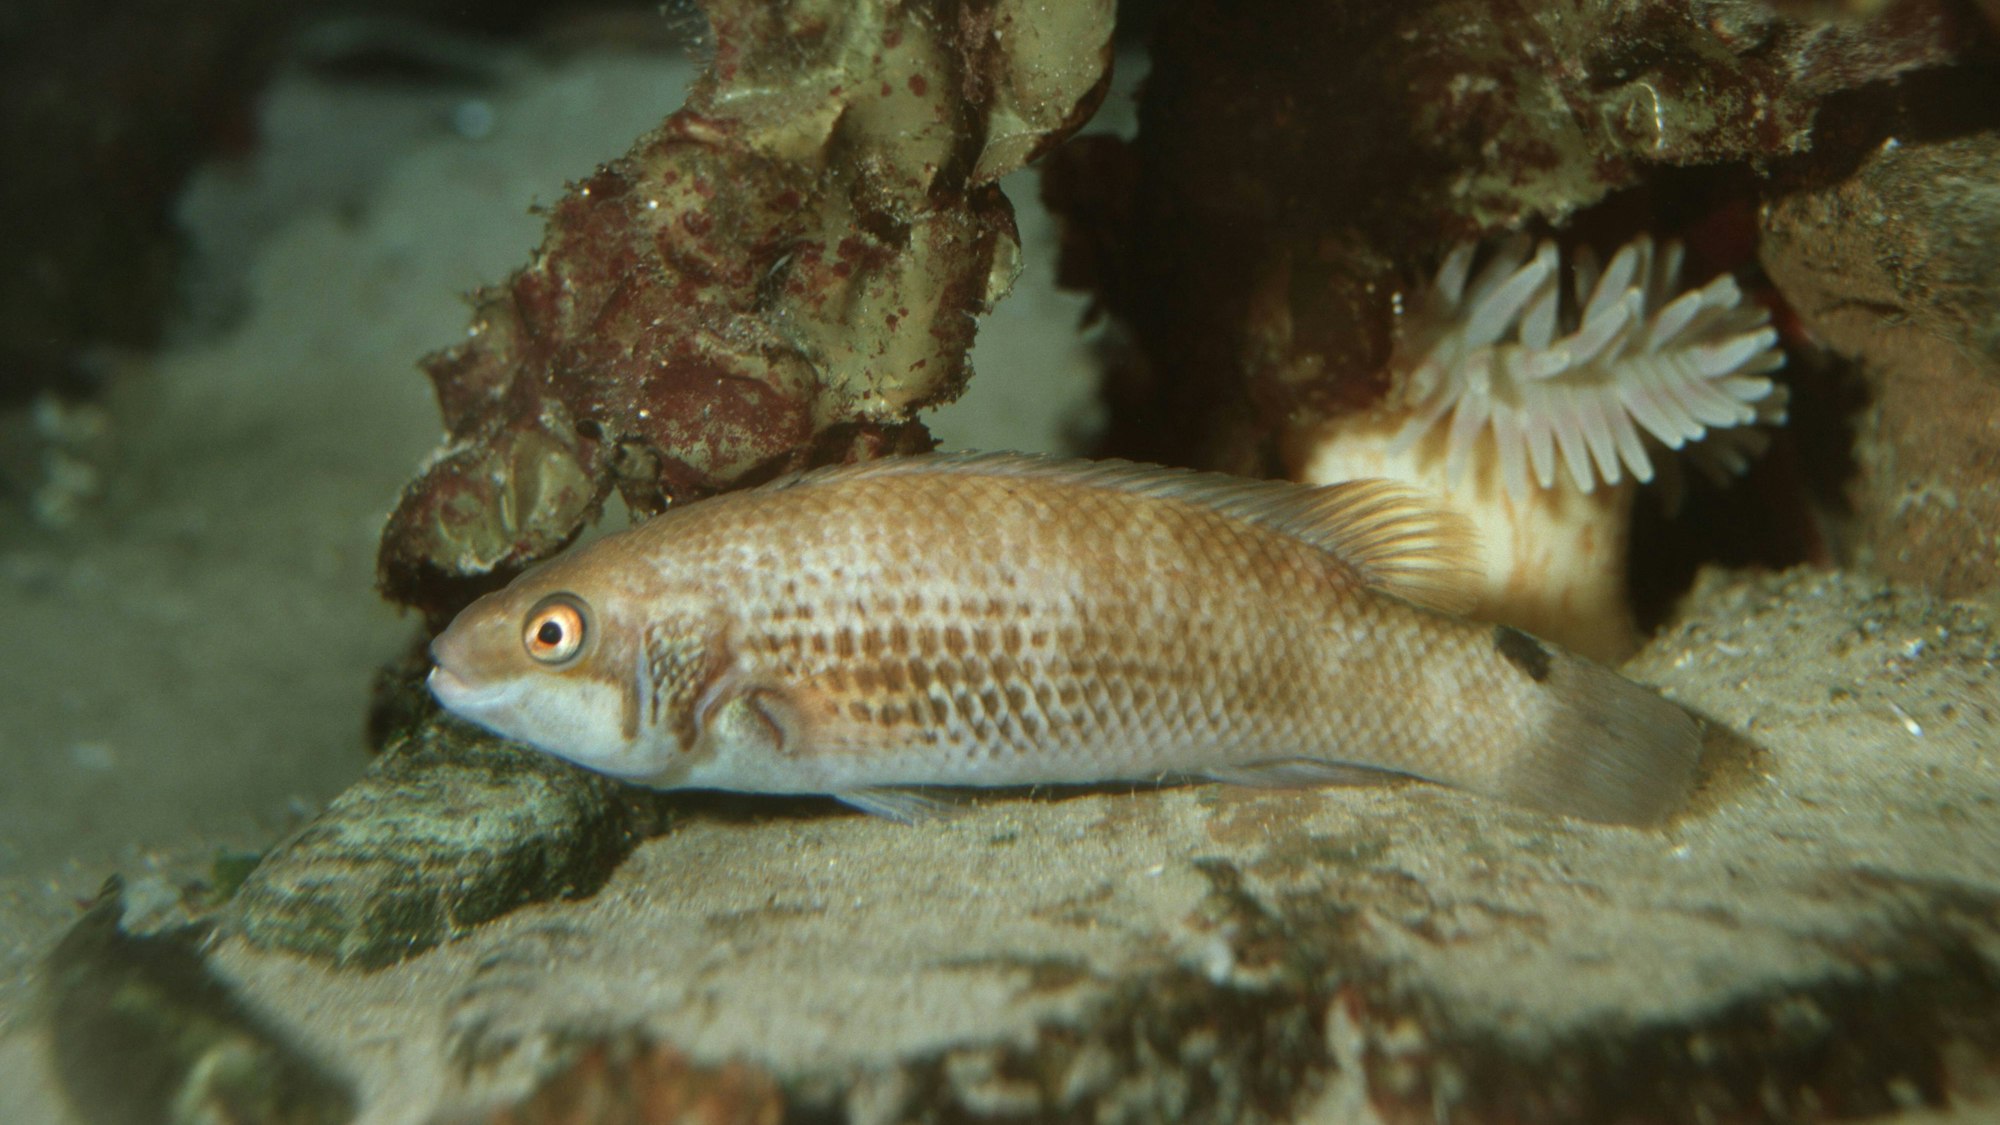 Ein Fisch aus der Familie der Scheibenbäuche am Meeresgrund. Das Tier, das in mehreren 1000 Metern Tiefe lebt, versteckt sich zwischen Korallen. (Symbolbild)